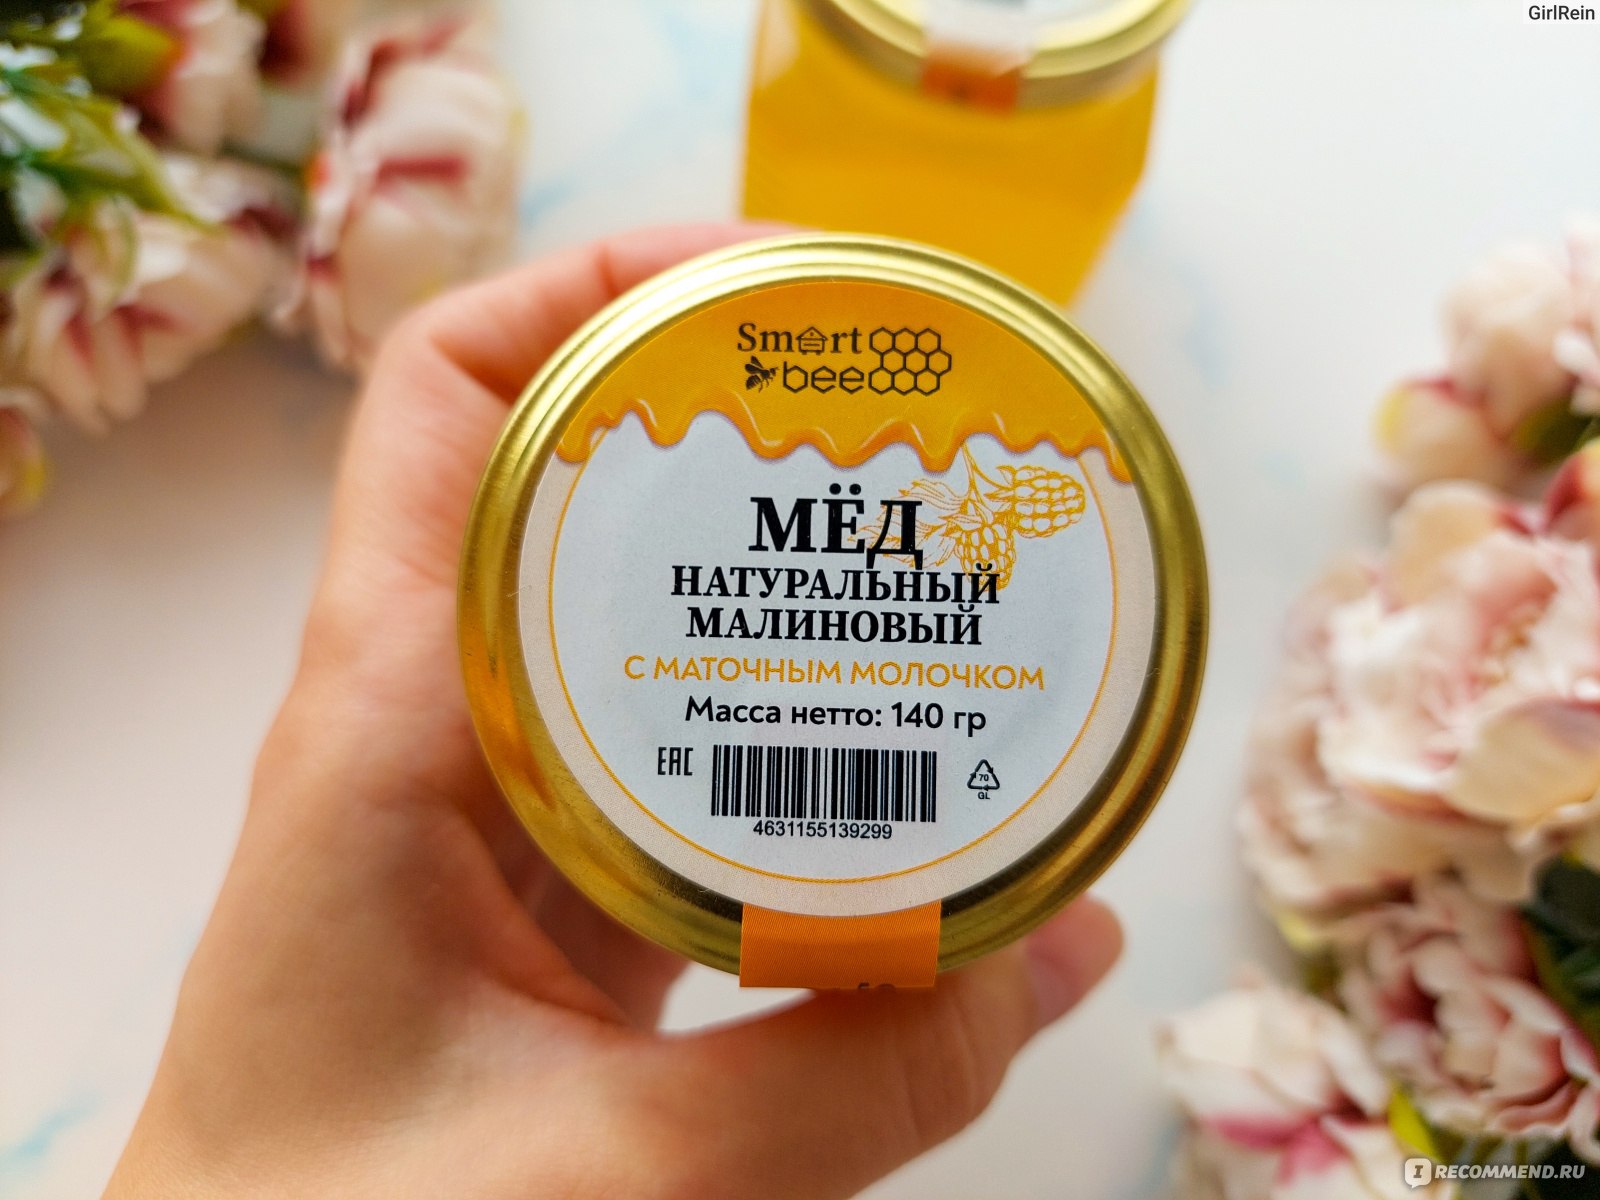 Мёд Smart Bee натуральный малиновый с маточным молочком